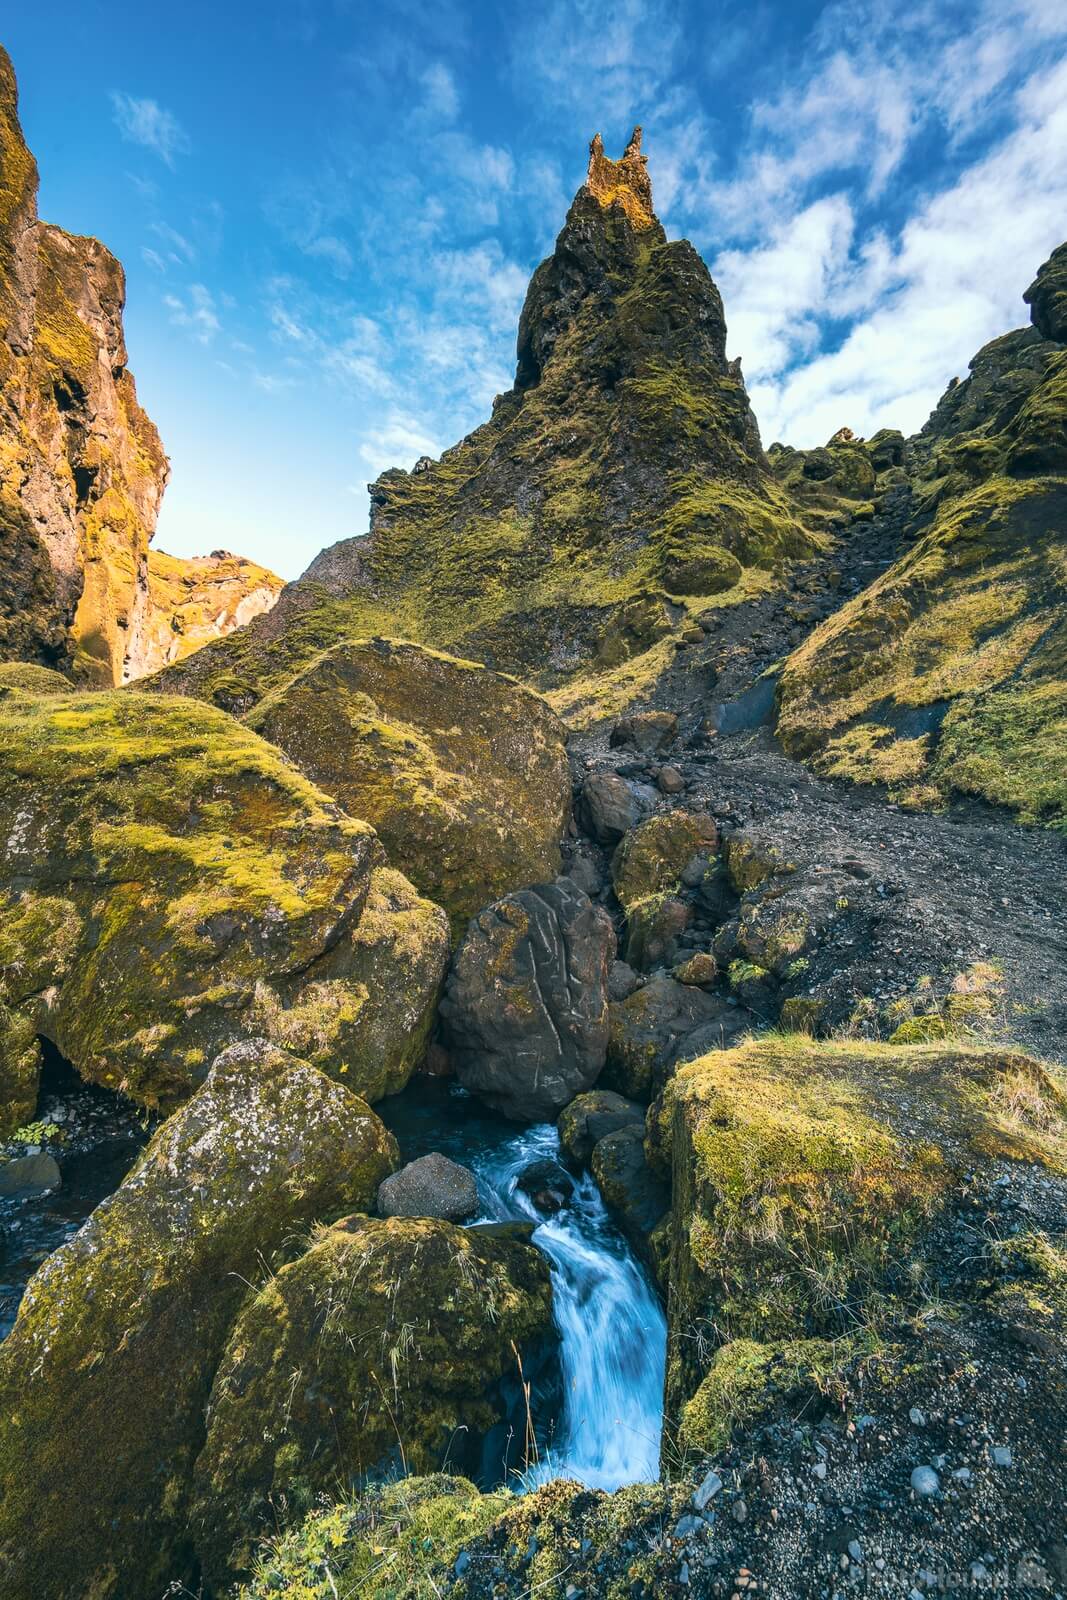 Image of Þakgil by James Billings.